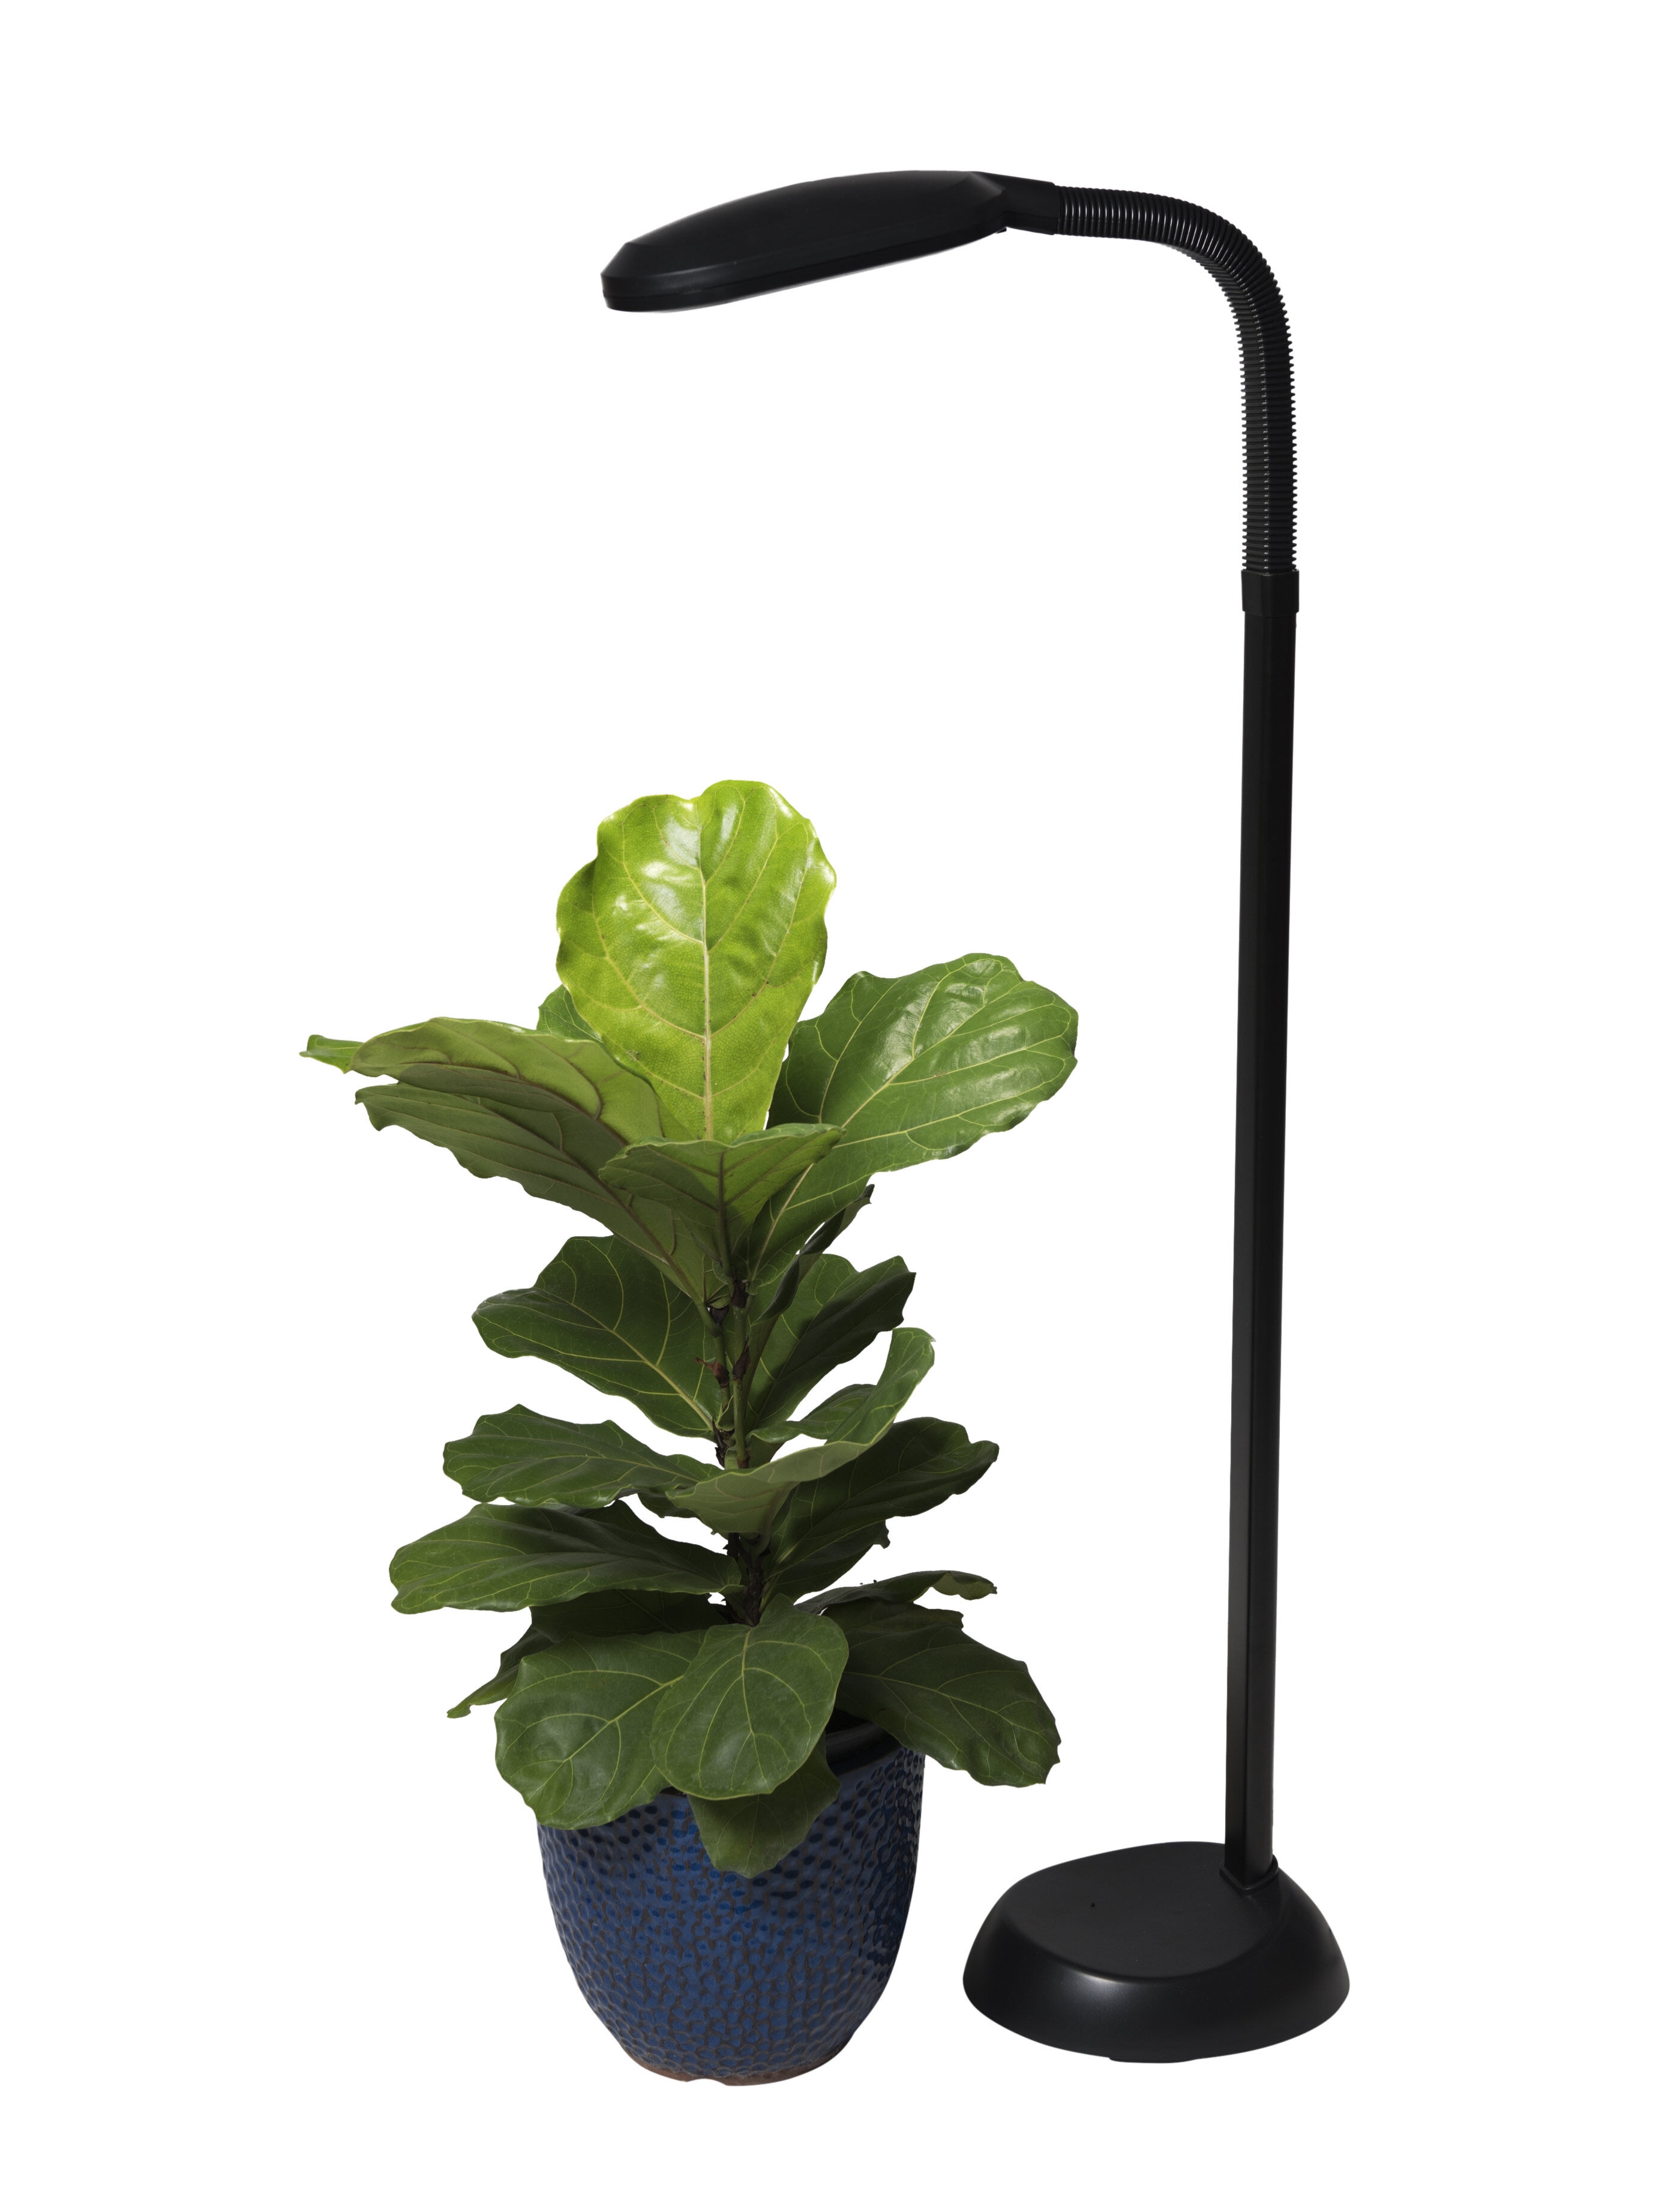 ACKE-Floor-Lamp-Standing-Lamp for Indoor Plants' Growing,Grow Light for Indoor P 